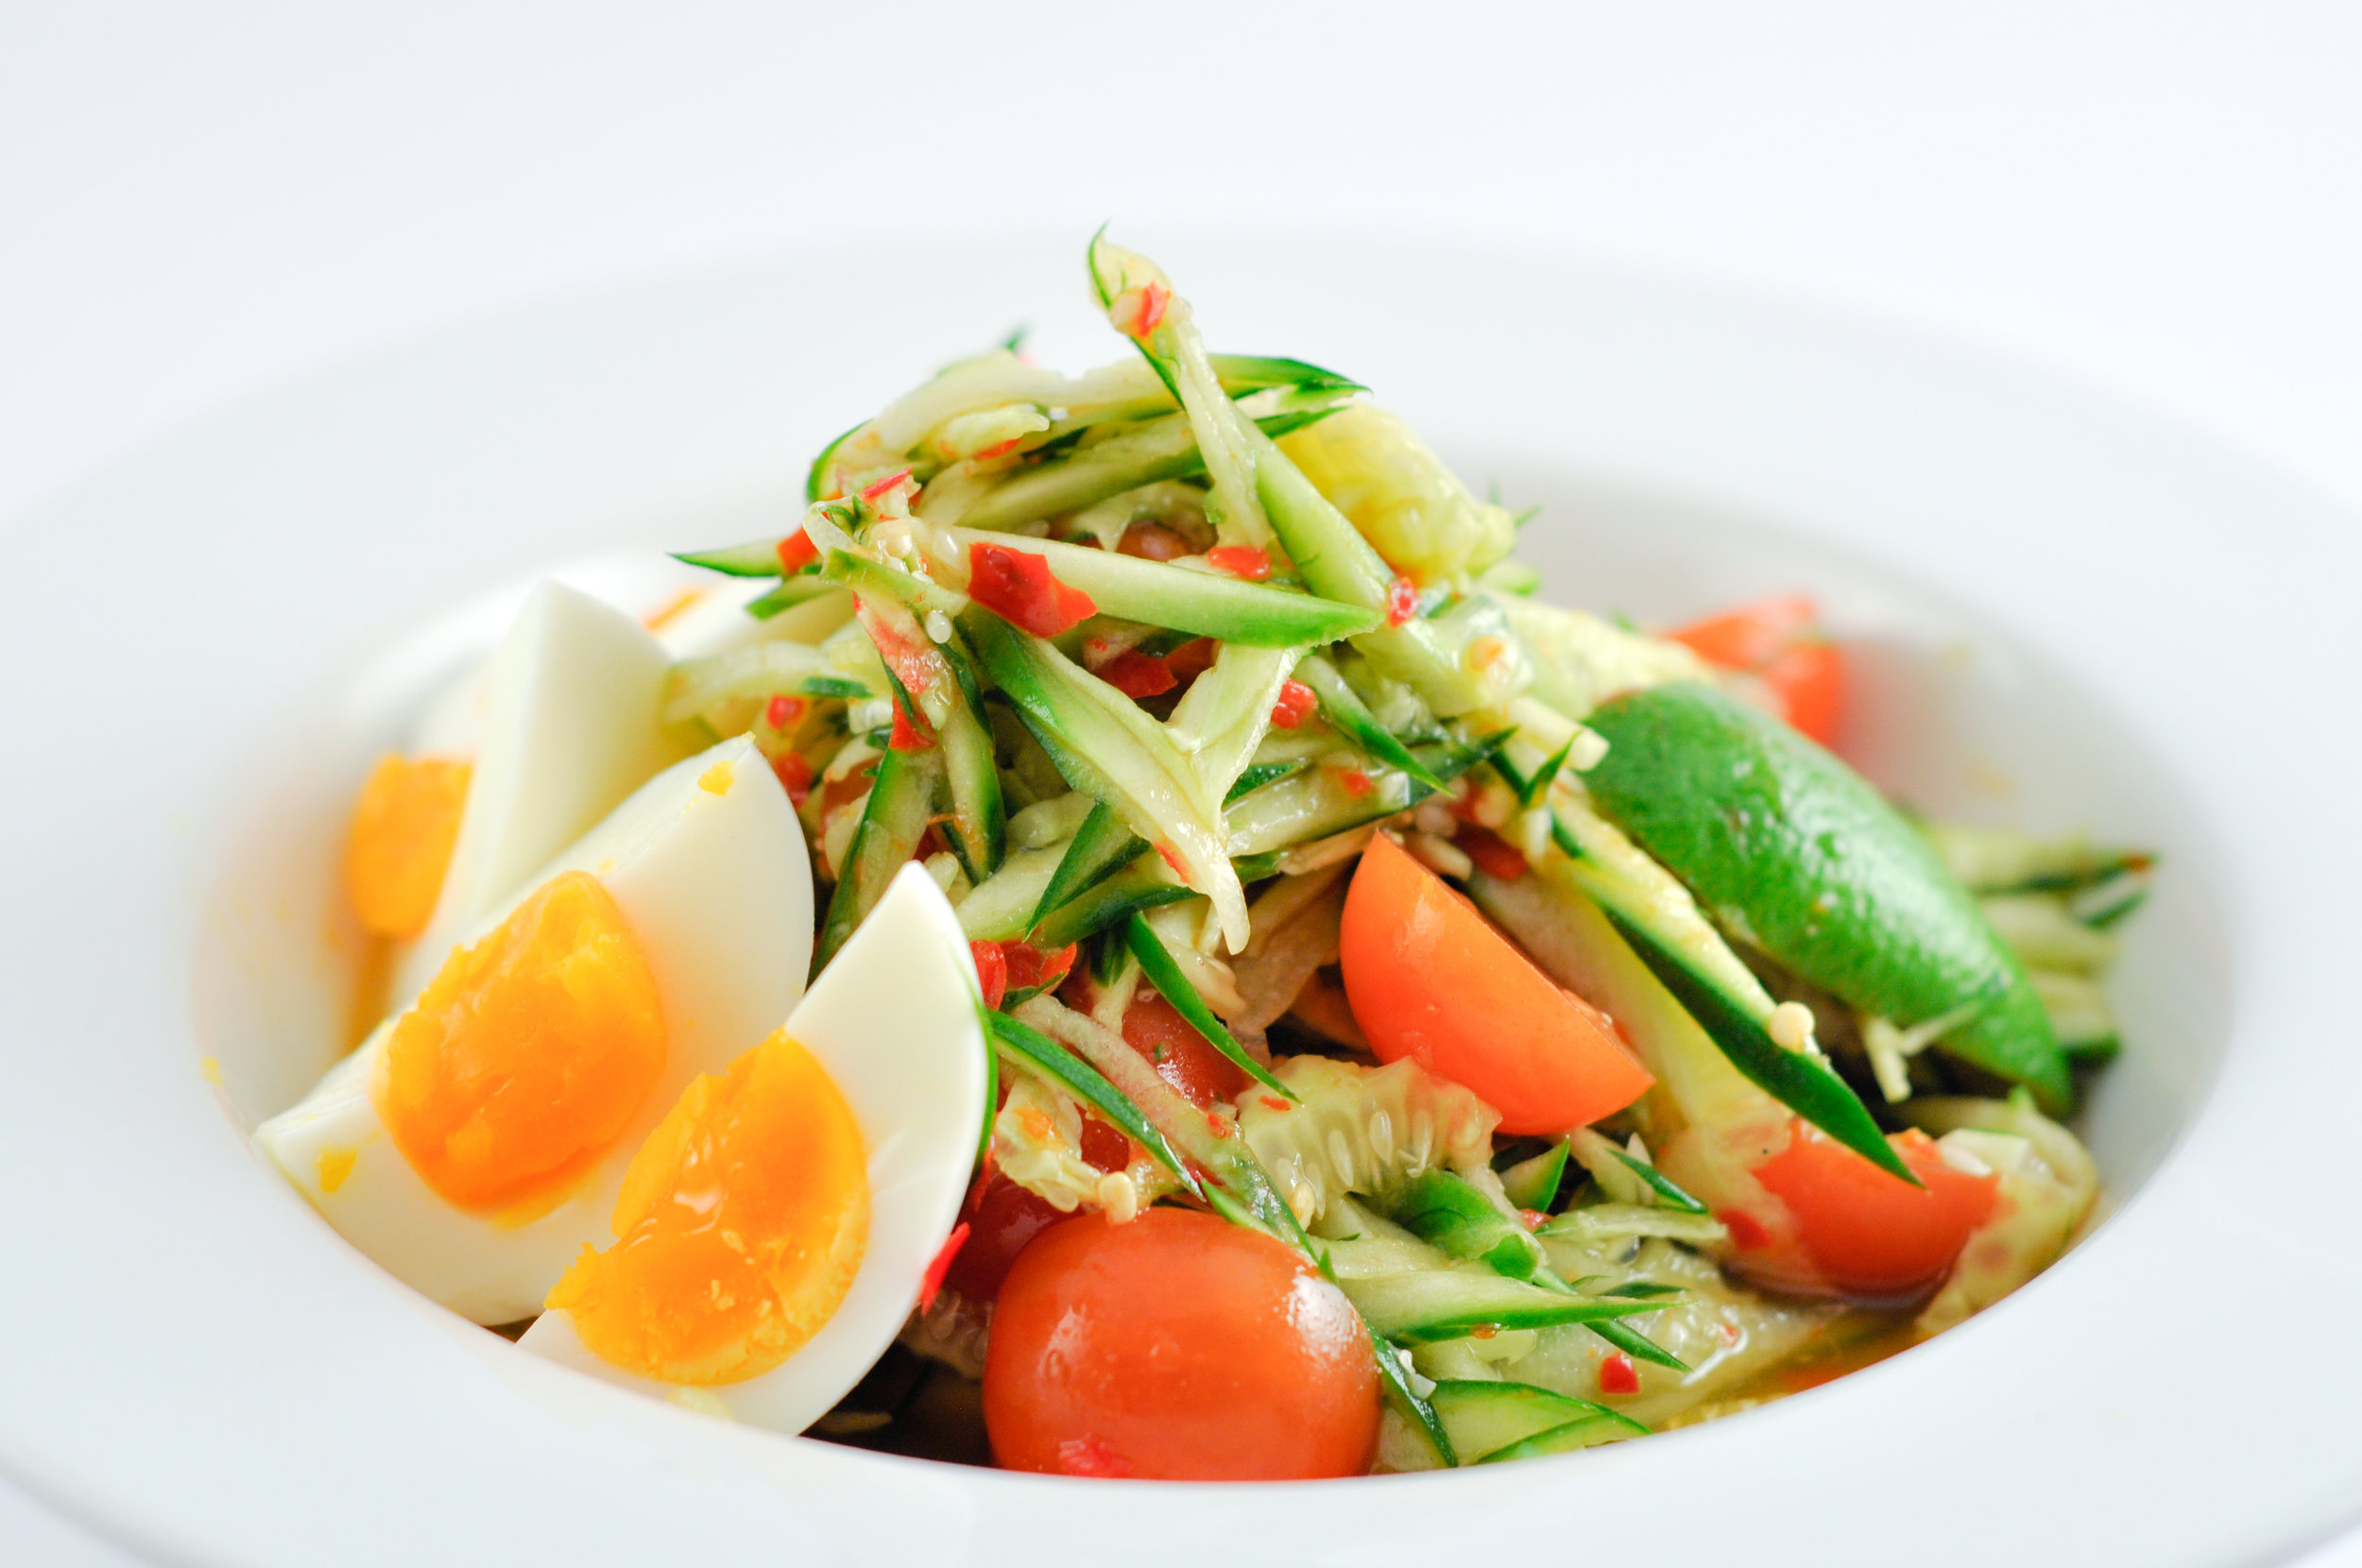 Tum Mark Dtang - Cucumber Salad